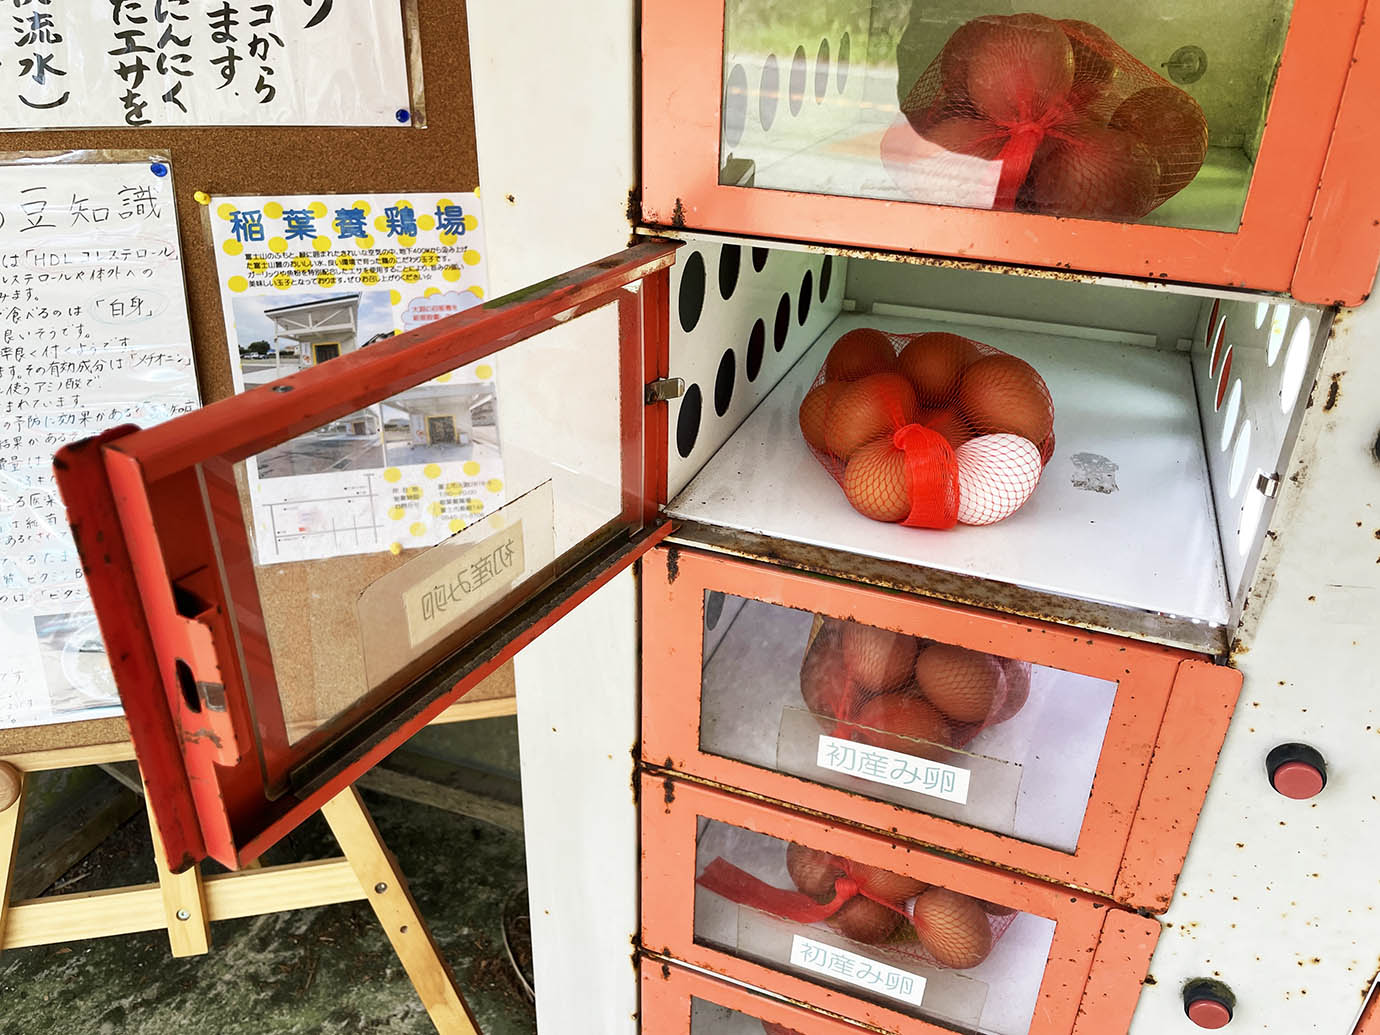 【激レアグルメ】富士山の伏流水で育った鶏の初産卵を買いに行こう / 運が良ければ二黄卵も入手可能